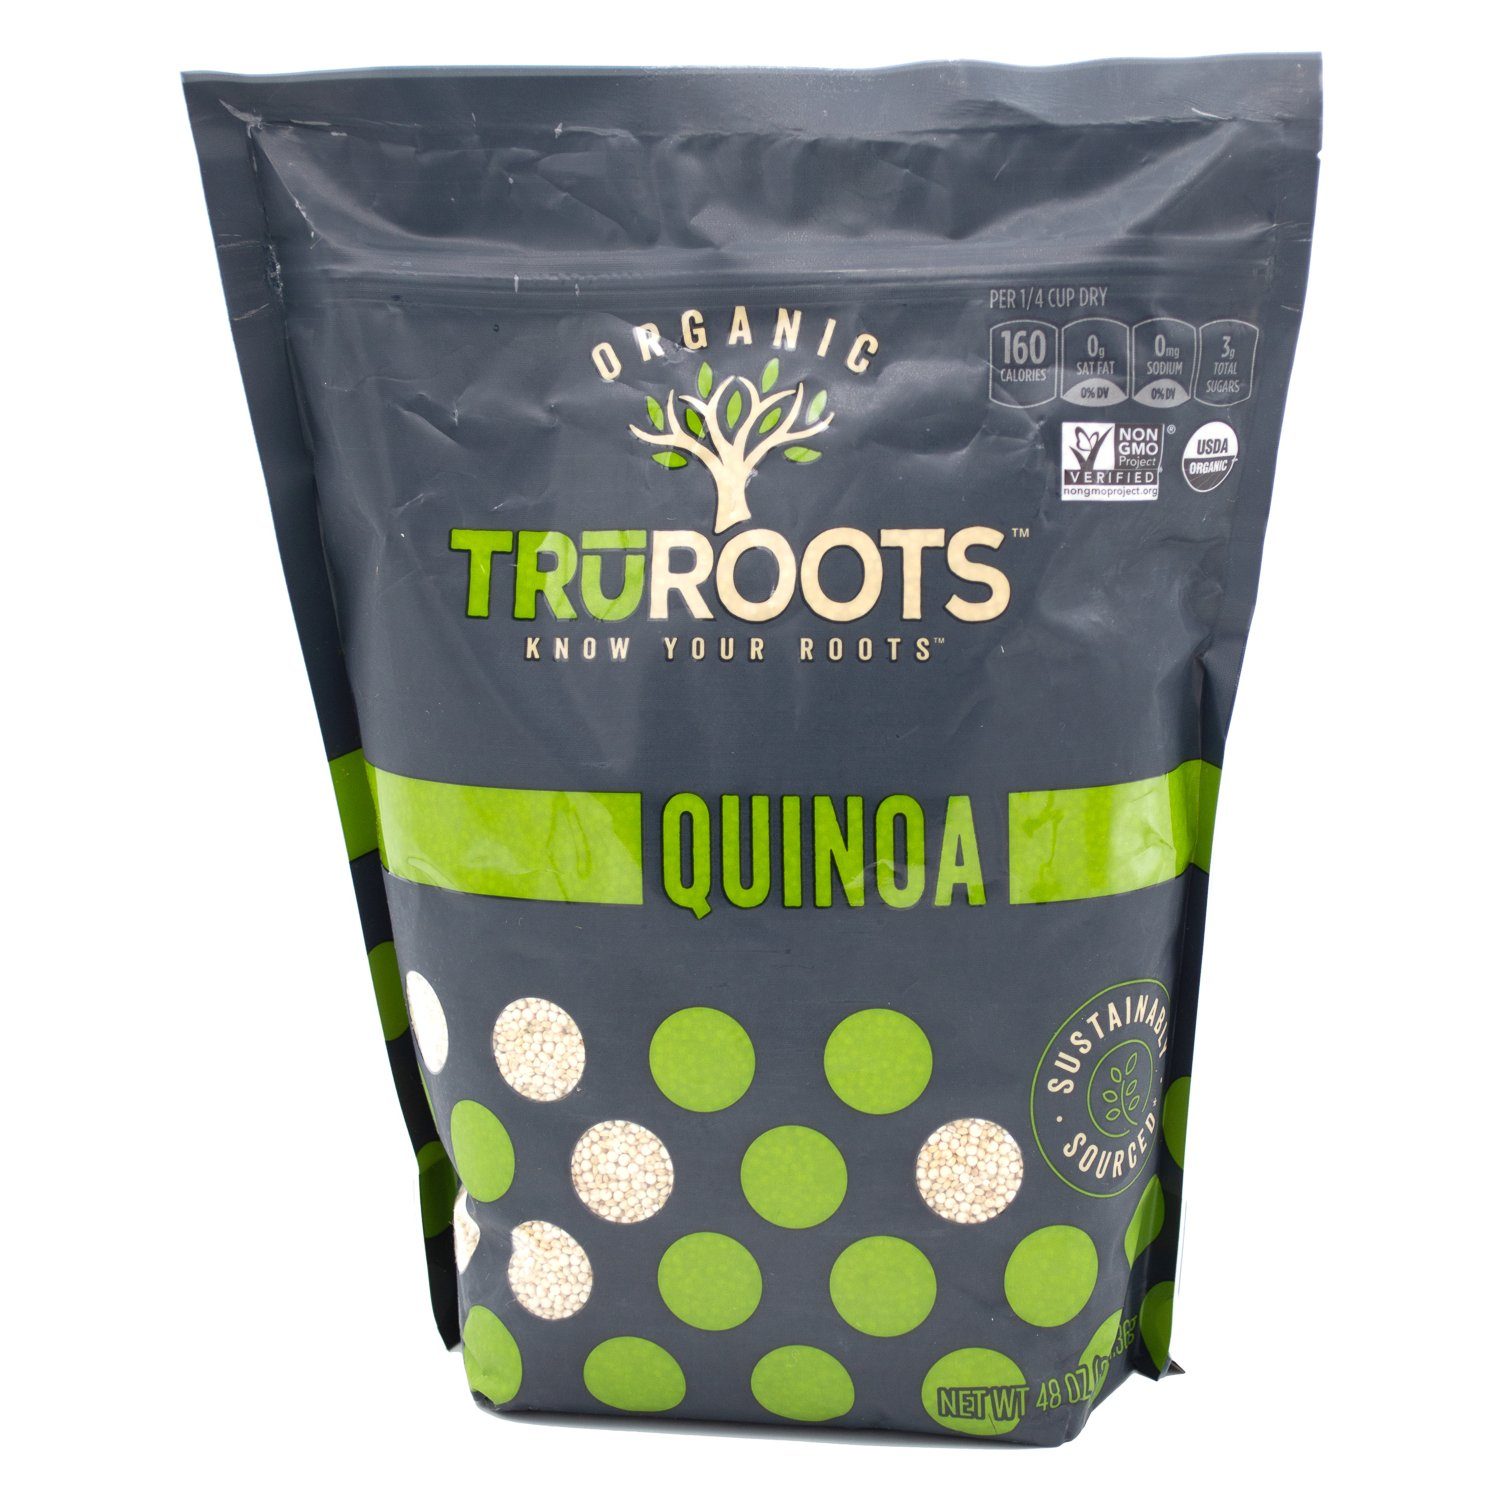 TruRoots Organic Quinoa TruRoots Organic Quinoa 48 Ounce 